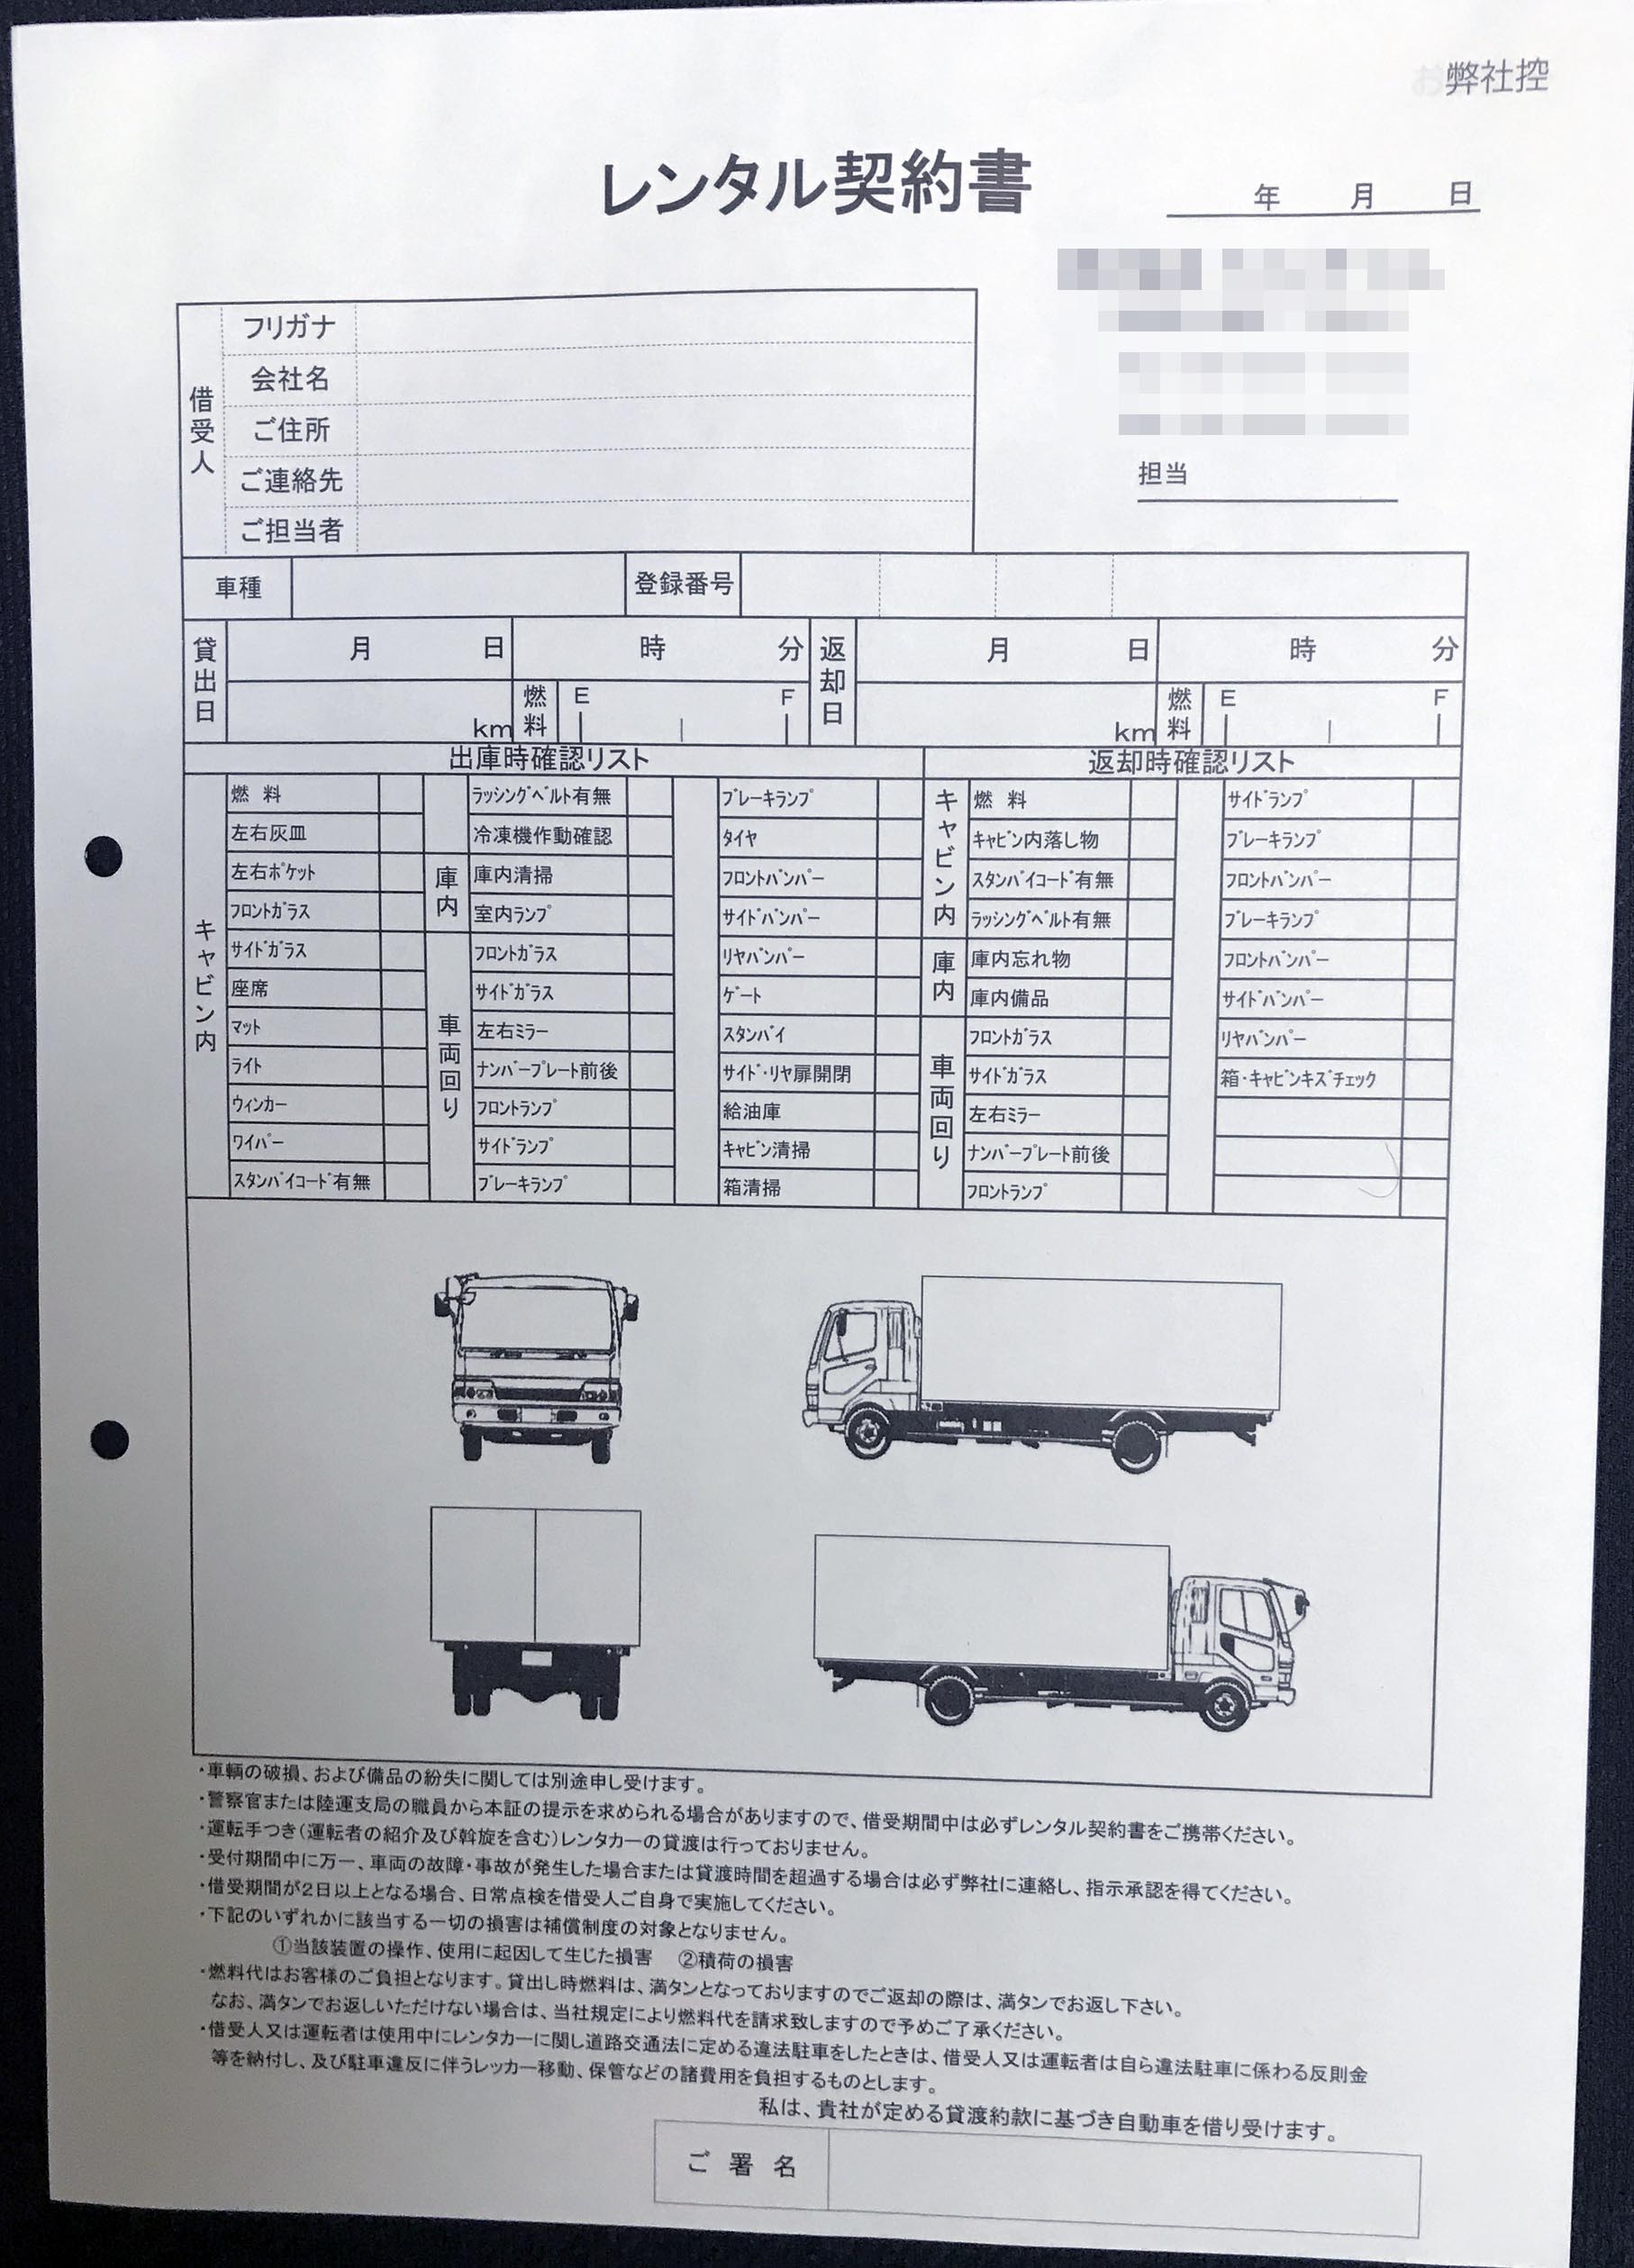 埼玉県　自動車整備業　レンタル契約書　(2枚複写)